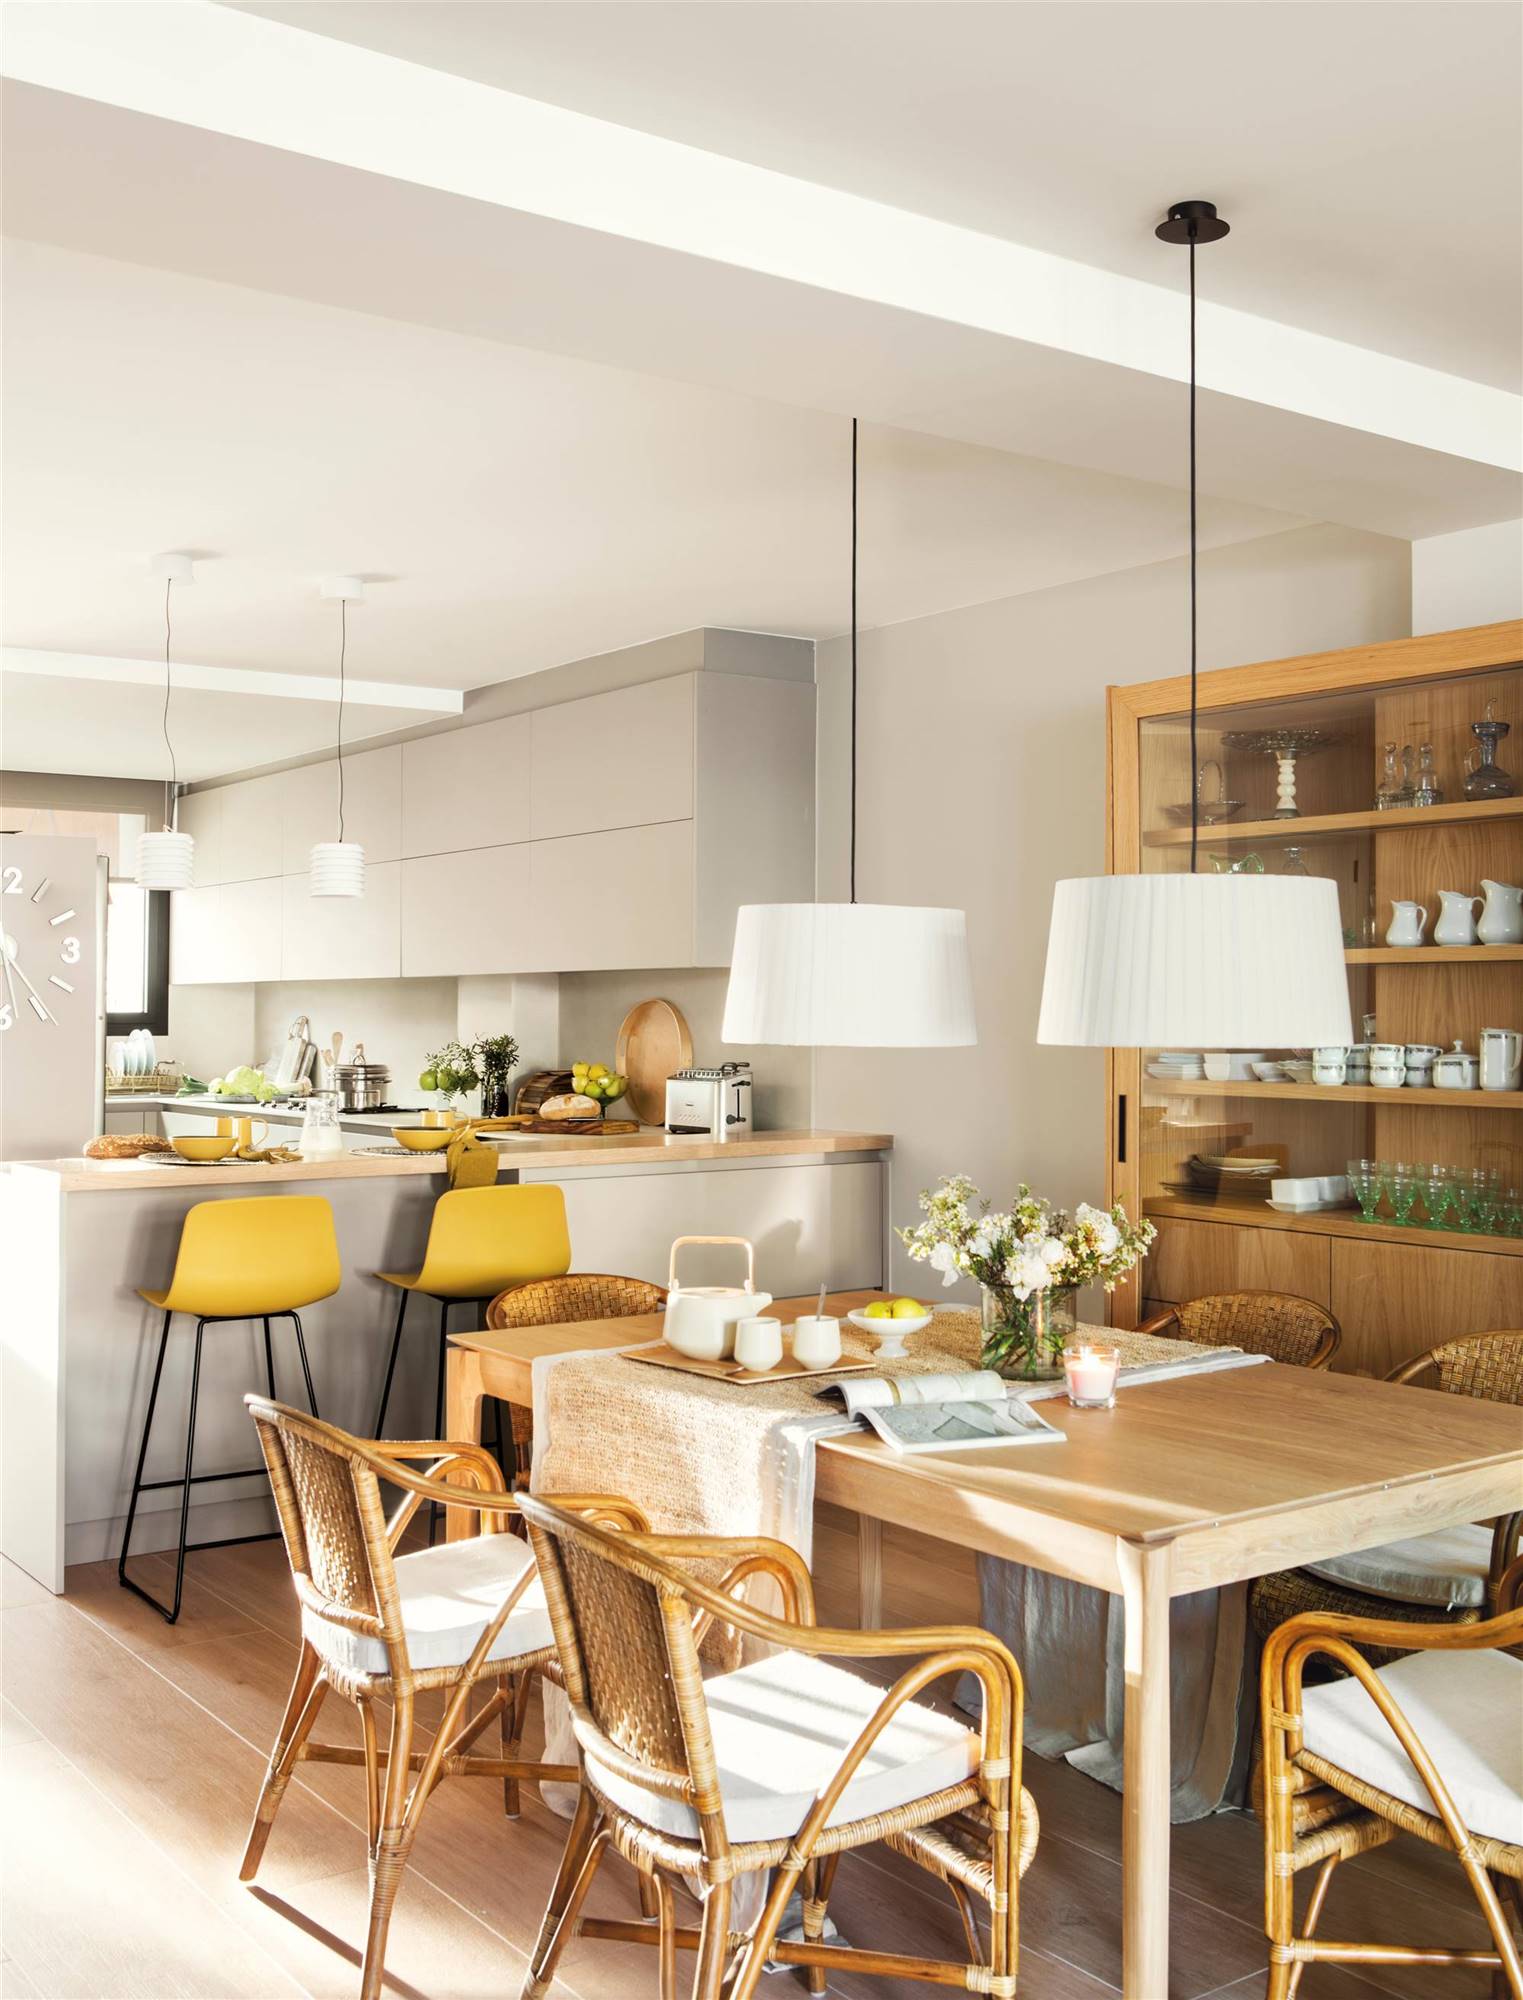 Cómo integrar cocina, salón y comedor en un mismo espacio.